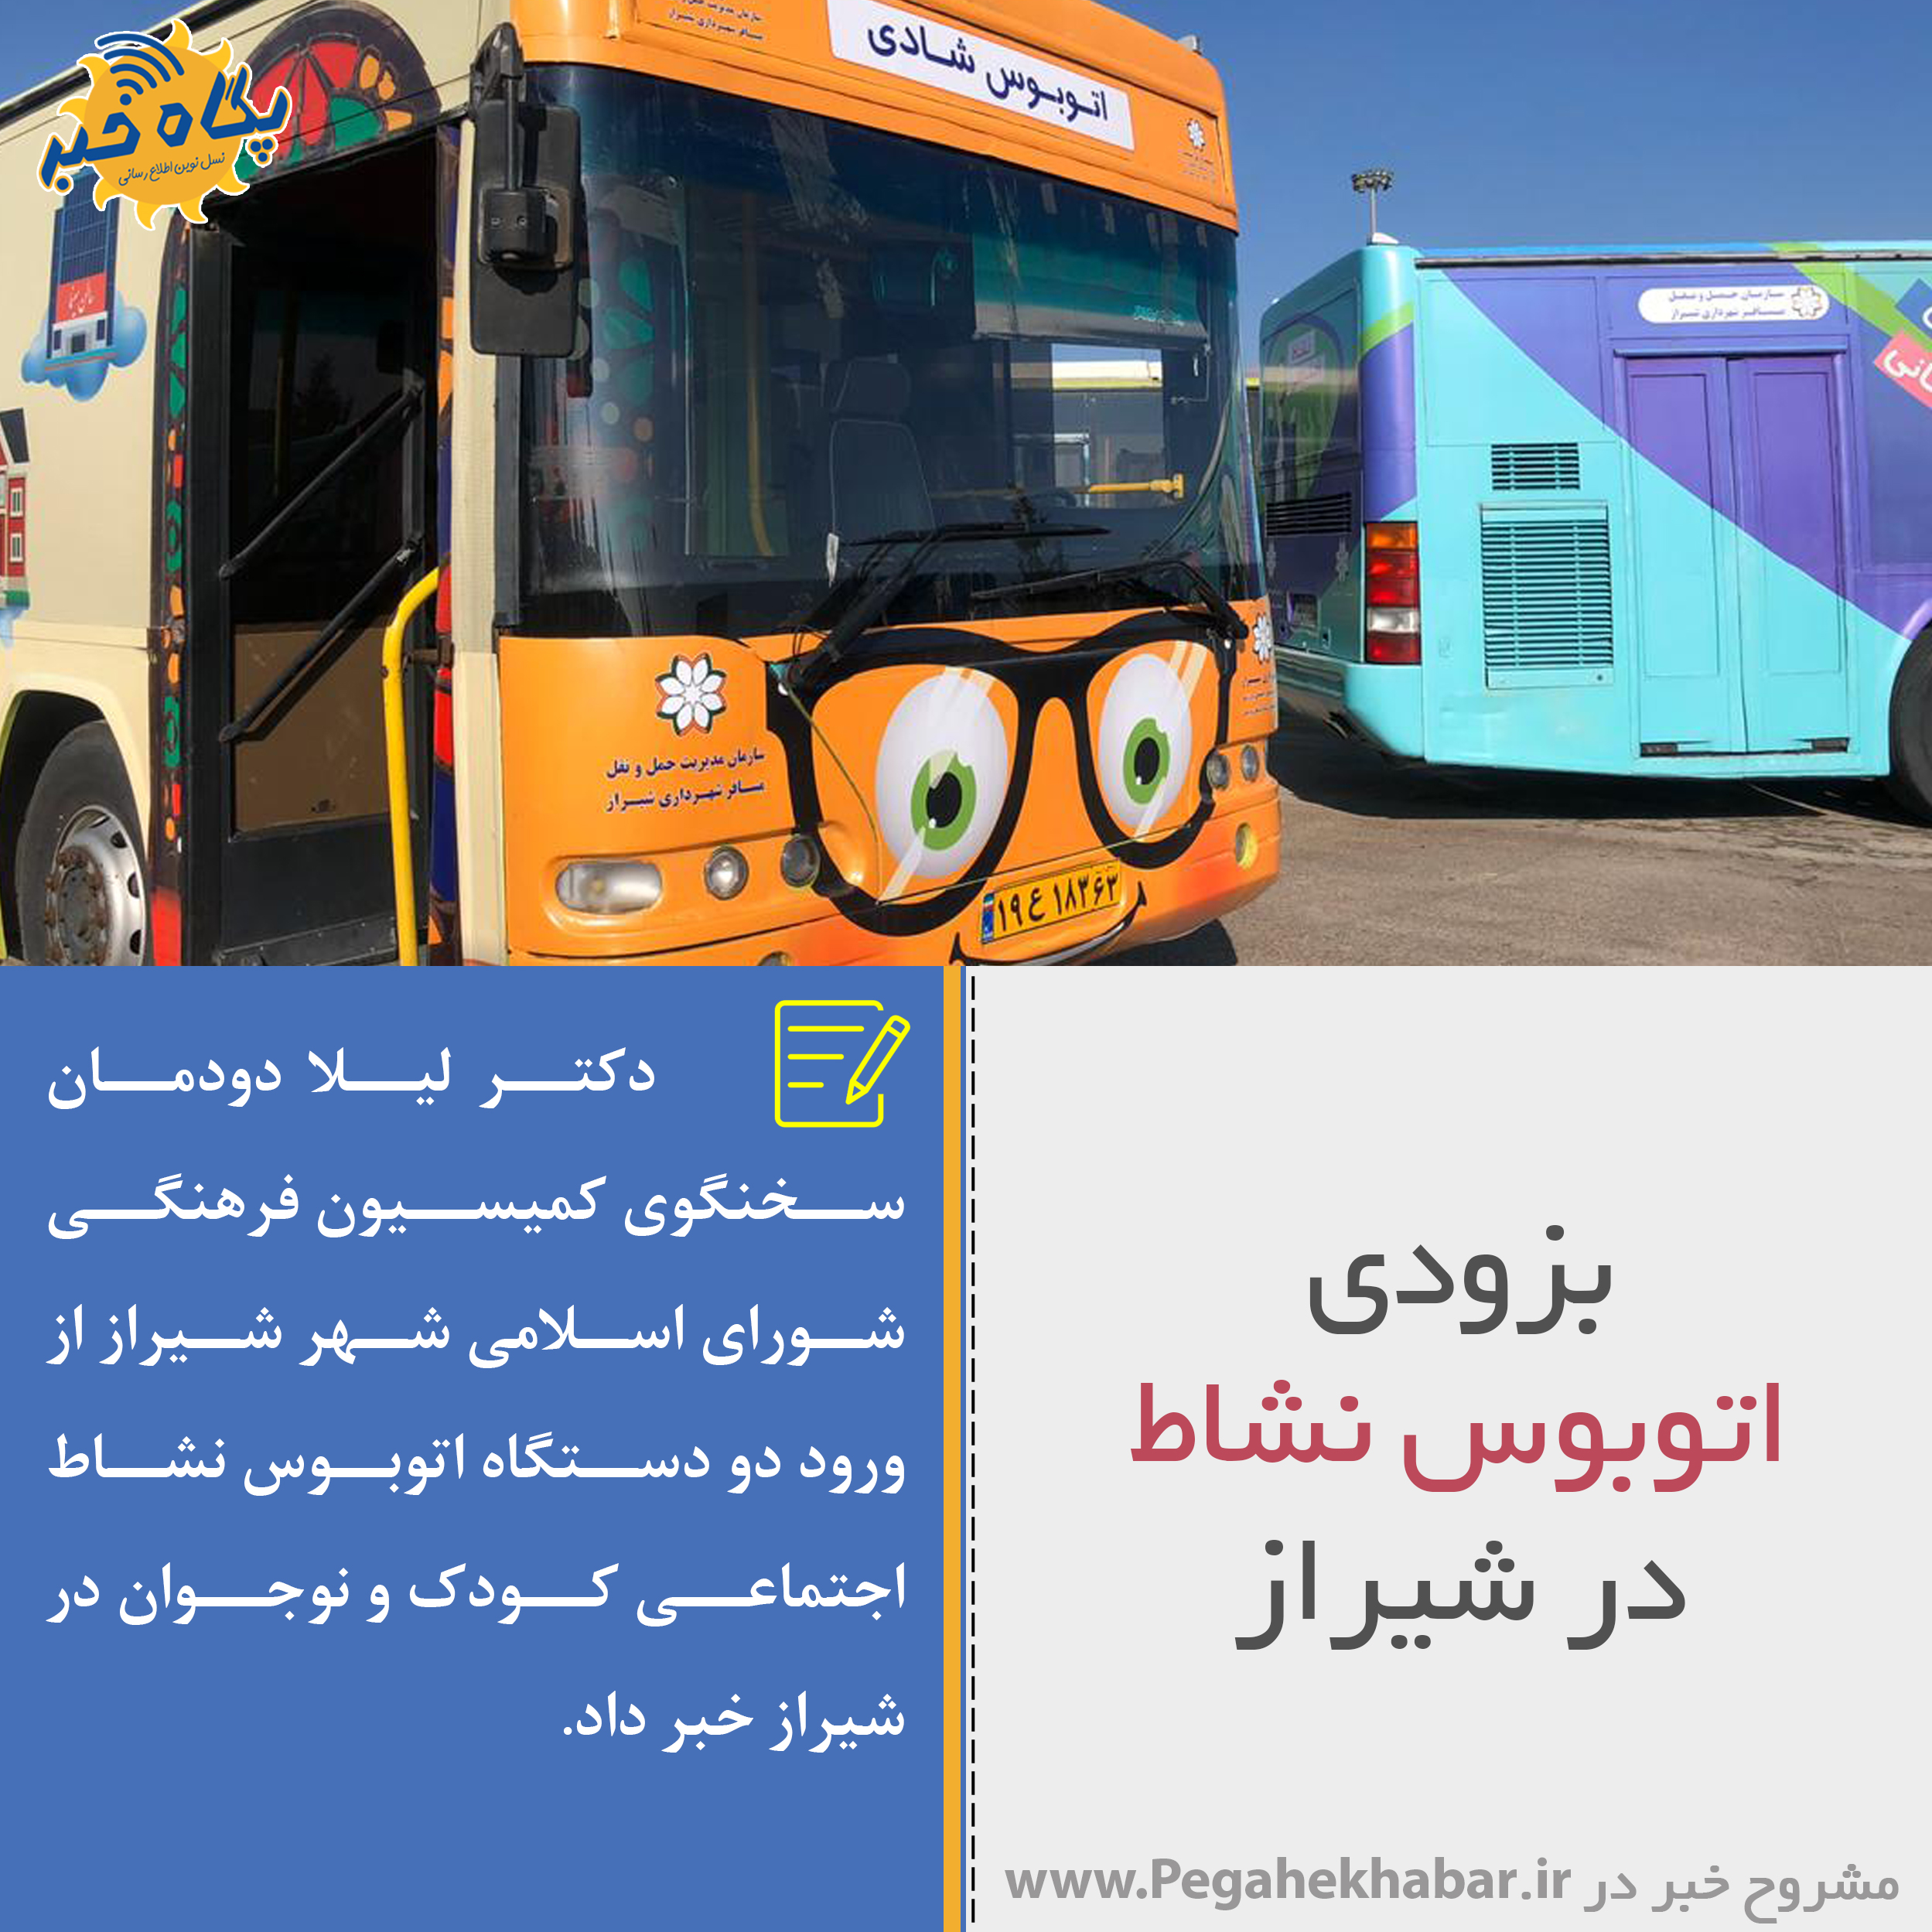 عکس نوشت|بزودی اتوبوس نشاط  در شیراز